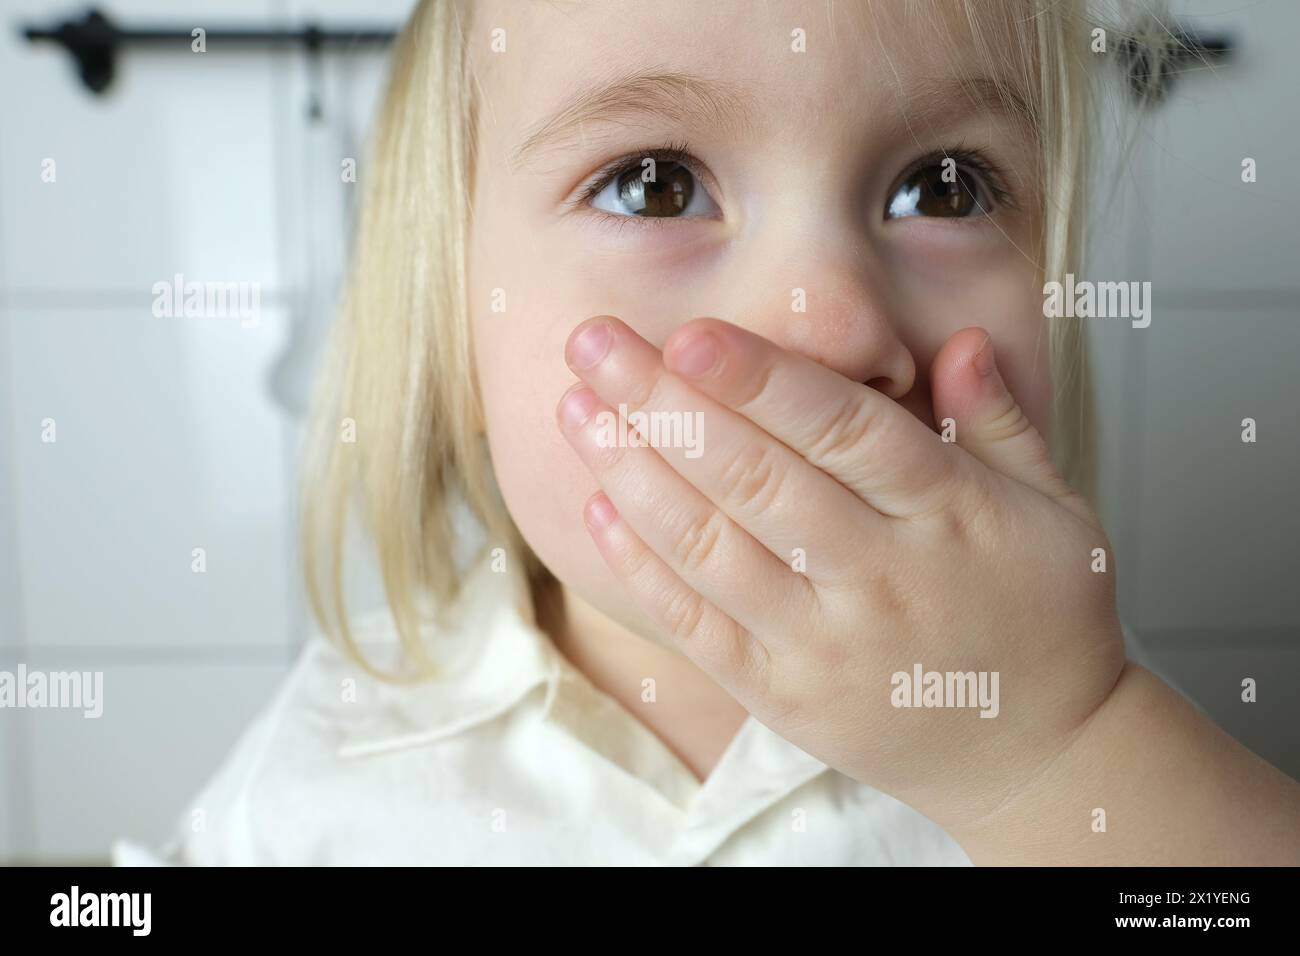 Kleines Kind, Baby, blondes Mädchen bedeckte ihren Mund mit ihrer Hand, das Konzept der Erziehung, Bestrafung für schlechte Worte, Kinderwitze, necken Stockfoto